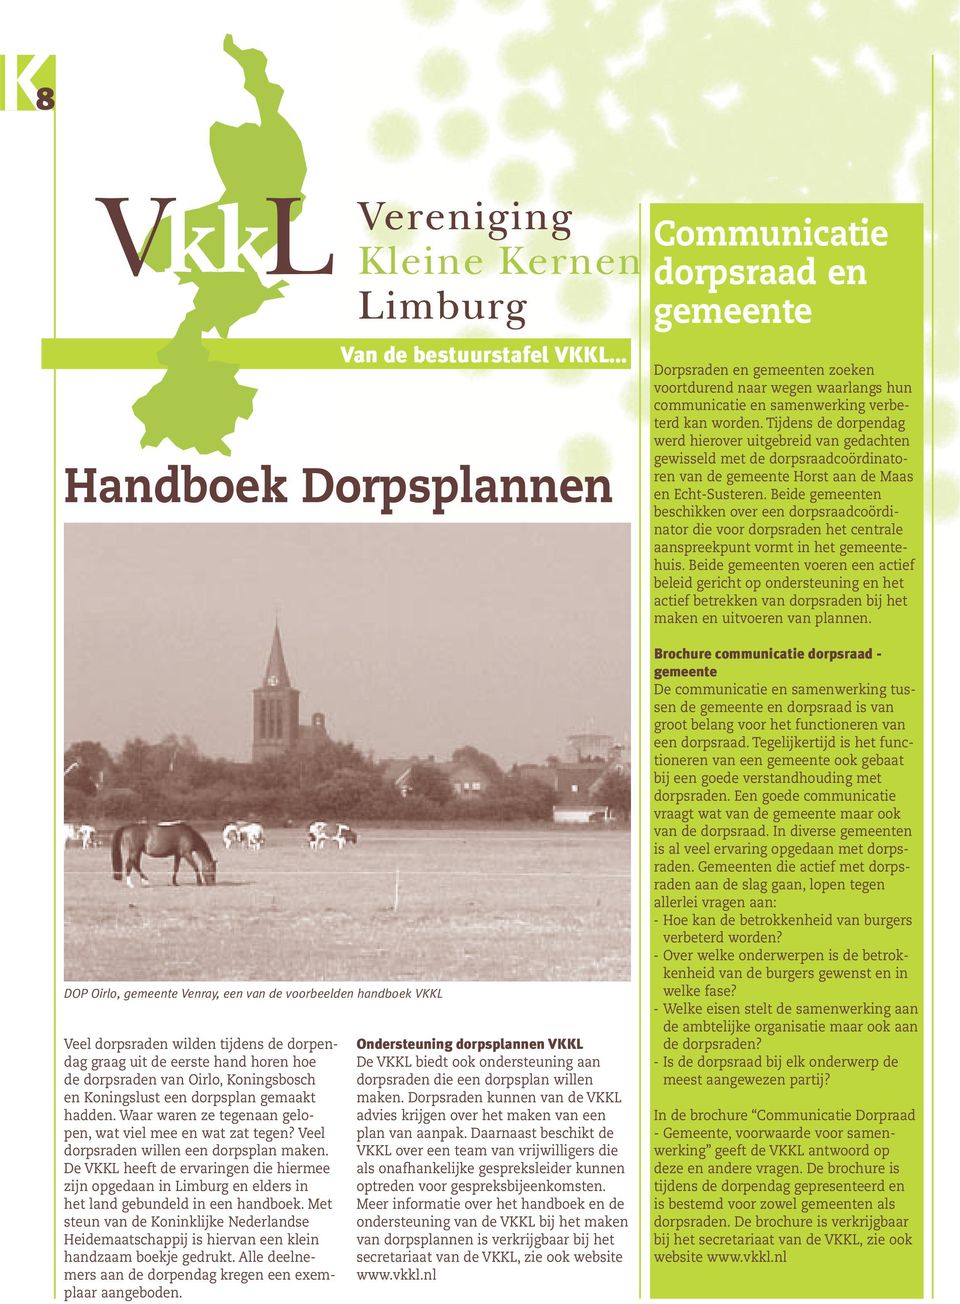 De VKKL heeft de ervaringen die hiermee zijn opgedaan in Limburg en elders in het land gebundeld in een handboek.